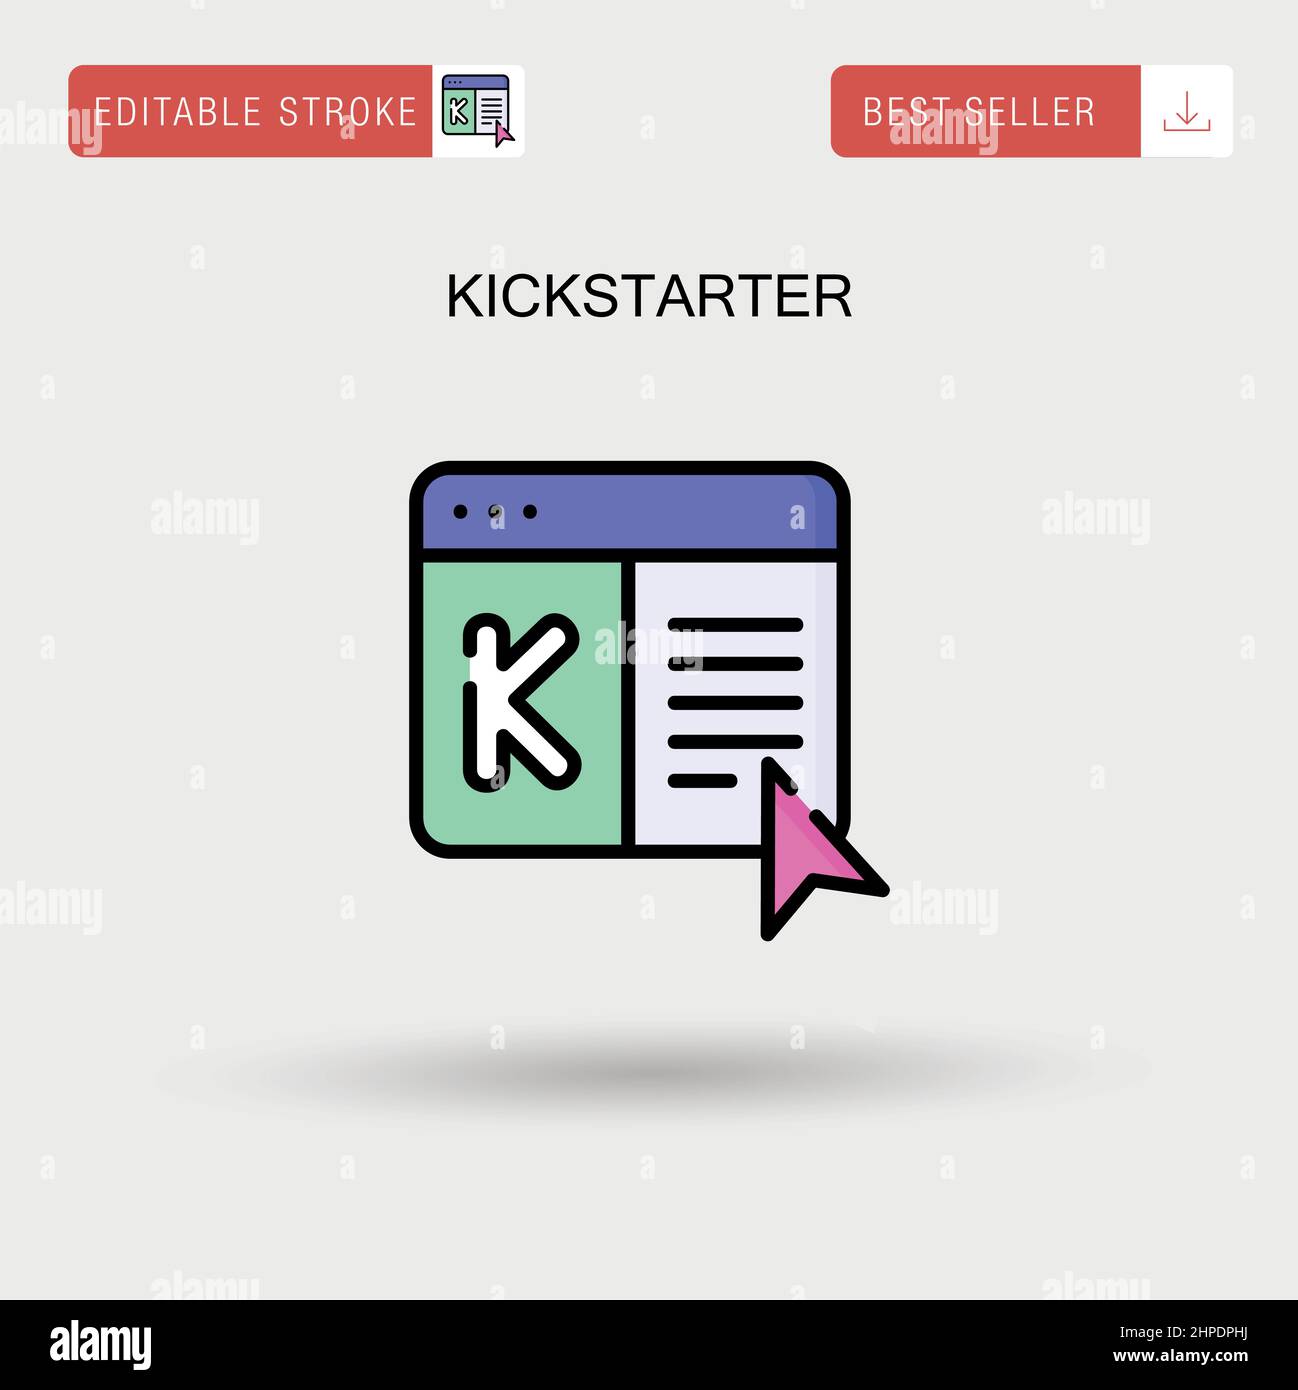 Kickstarter Simple vector icon. Stock Vector